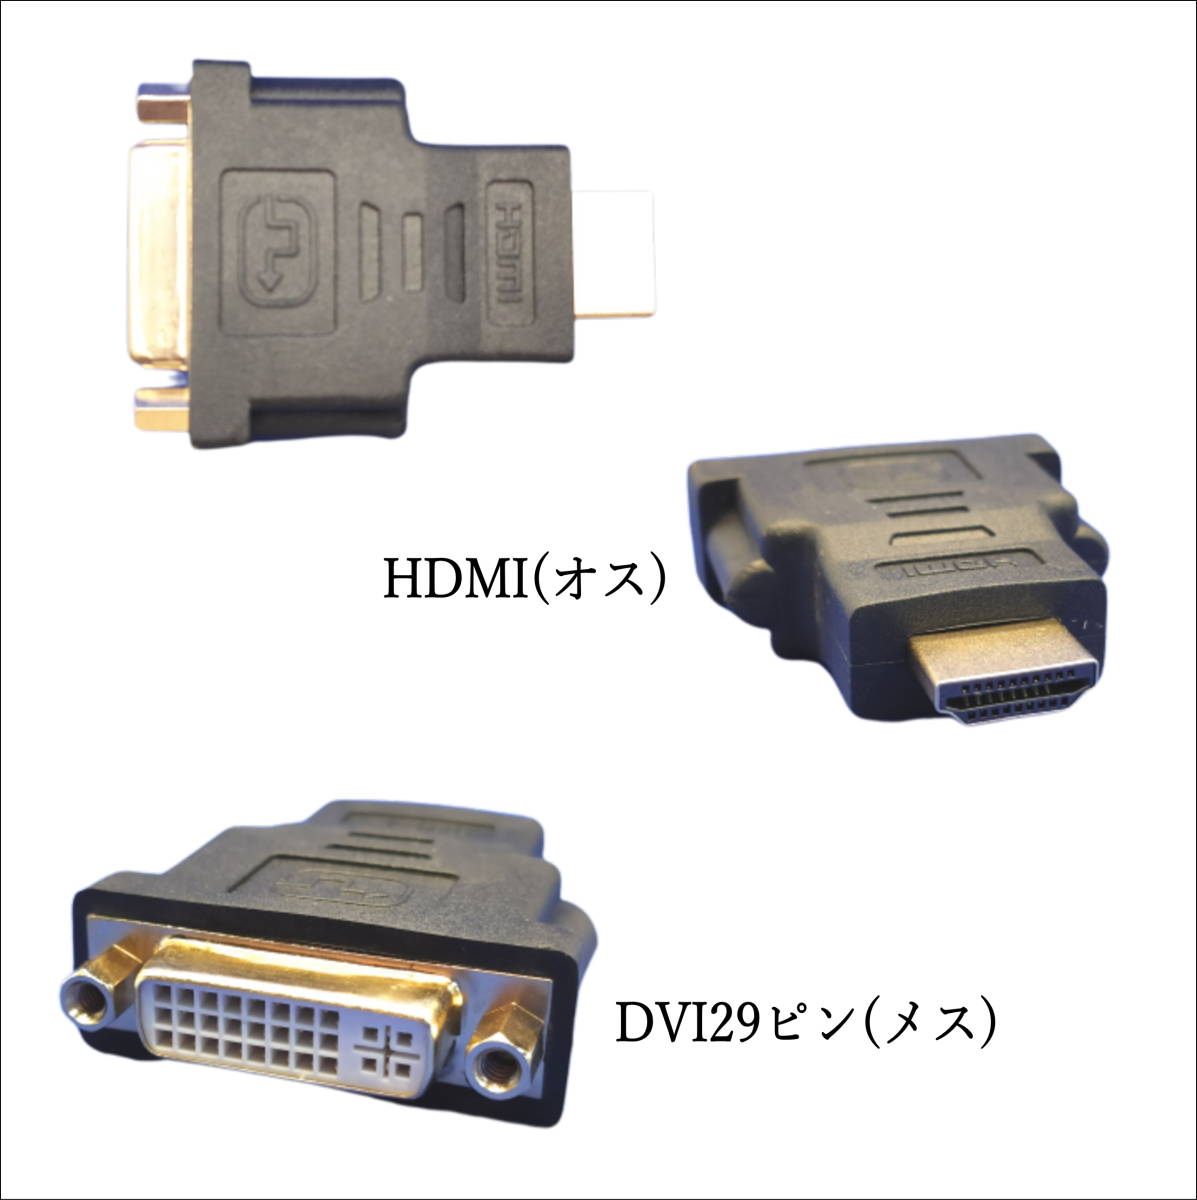 □DVI-I(29ピン)ケーブルをHDMI接続のモニタやテレビに出力 DVI-I29ピン(メス) →HDMI A(オス) 変換アダプタ 29-A【送料無料】